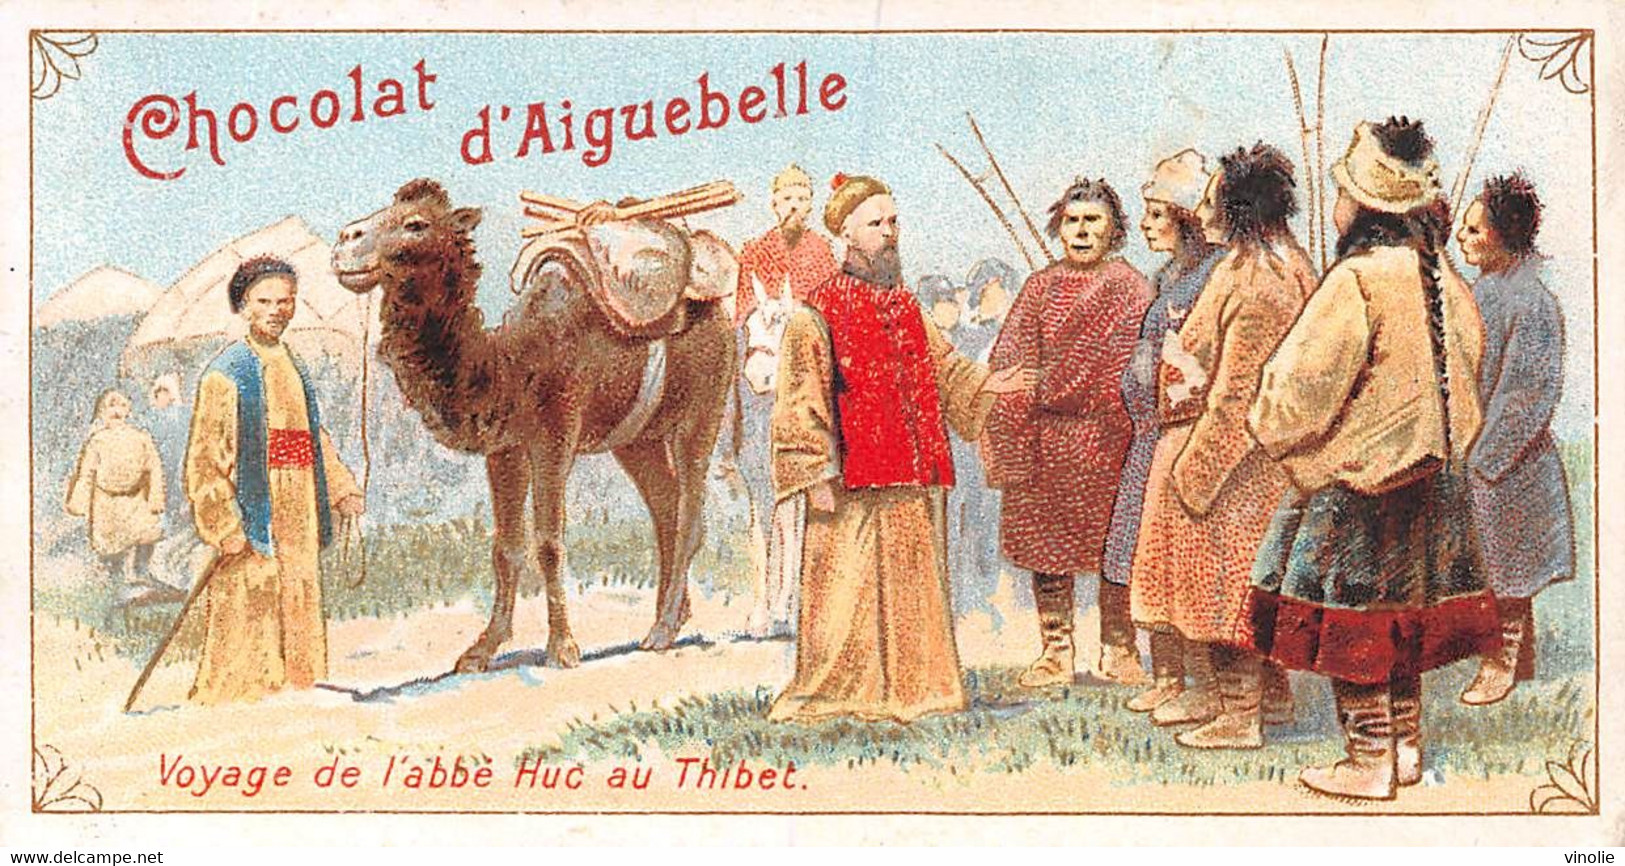 22-003 : IMAGE DU CHOCOLAT D'AIGUEBELLE. VOYAGE DE L'ABBE HUC AU THIBET - Tíbet